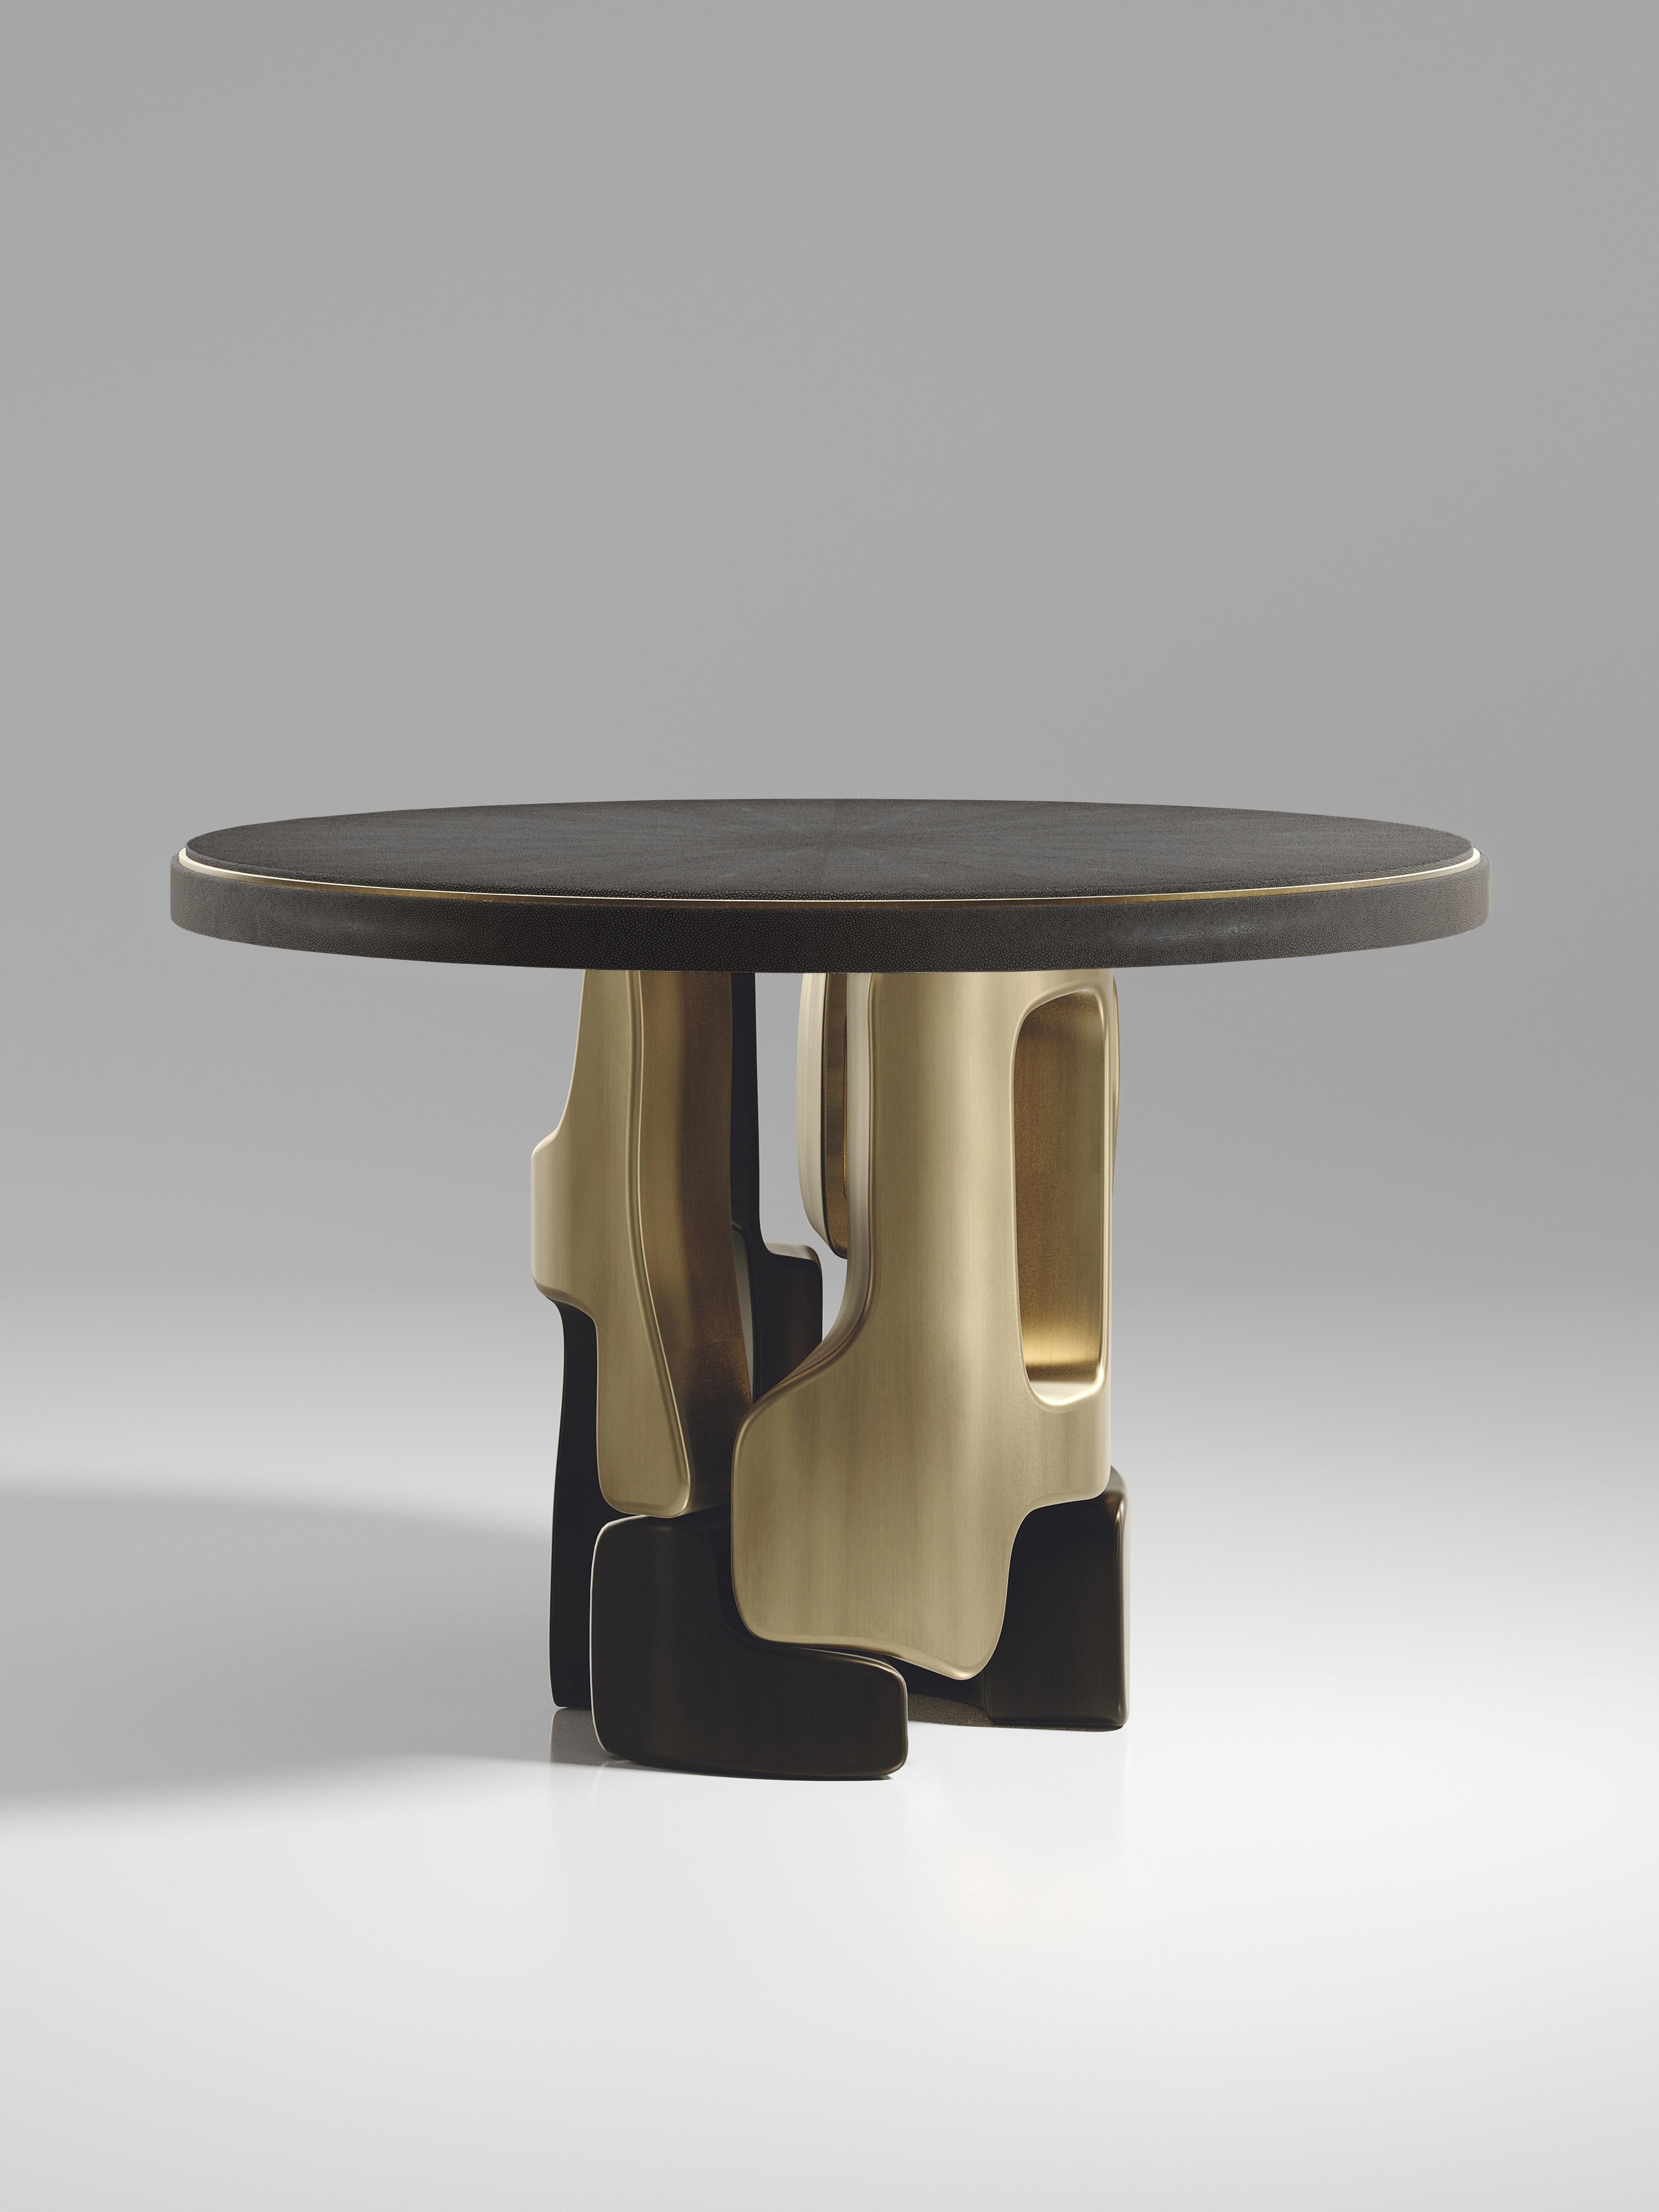 Der Frühstückstisch Apoli von Kifu Paris besticht durch sein einzigartiges Design. Die mit schwarzem Chagrin eingelegte Platte ruht auf einem geometrischen und skulpturalen Sockel aus Bronze-Patina-Messing. Dieses Stück wurde von Kifu Augousti, der